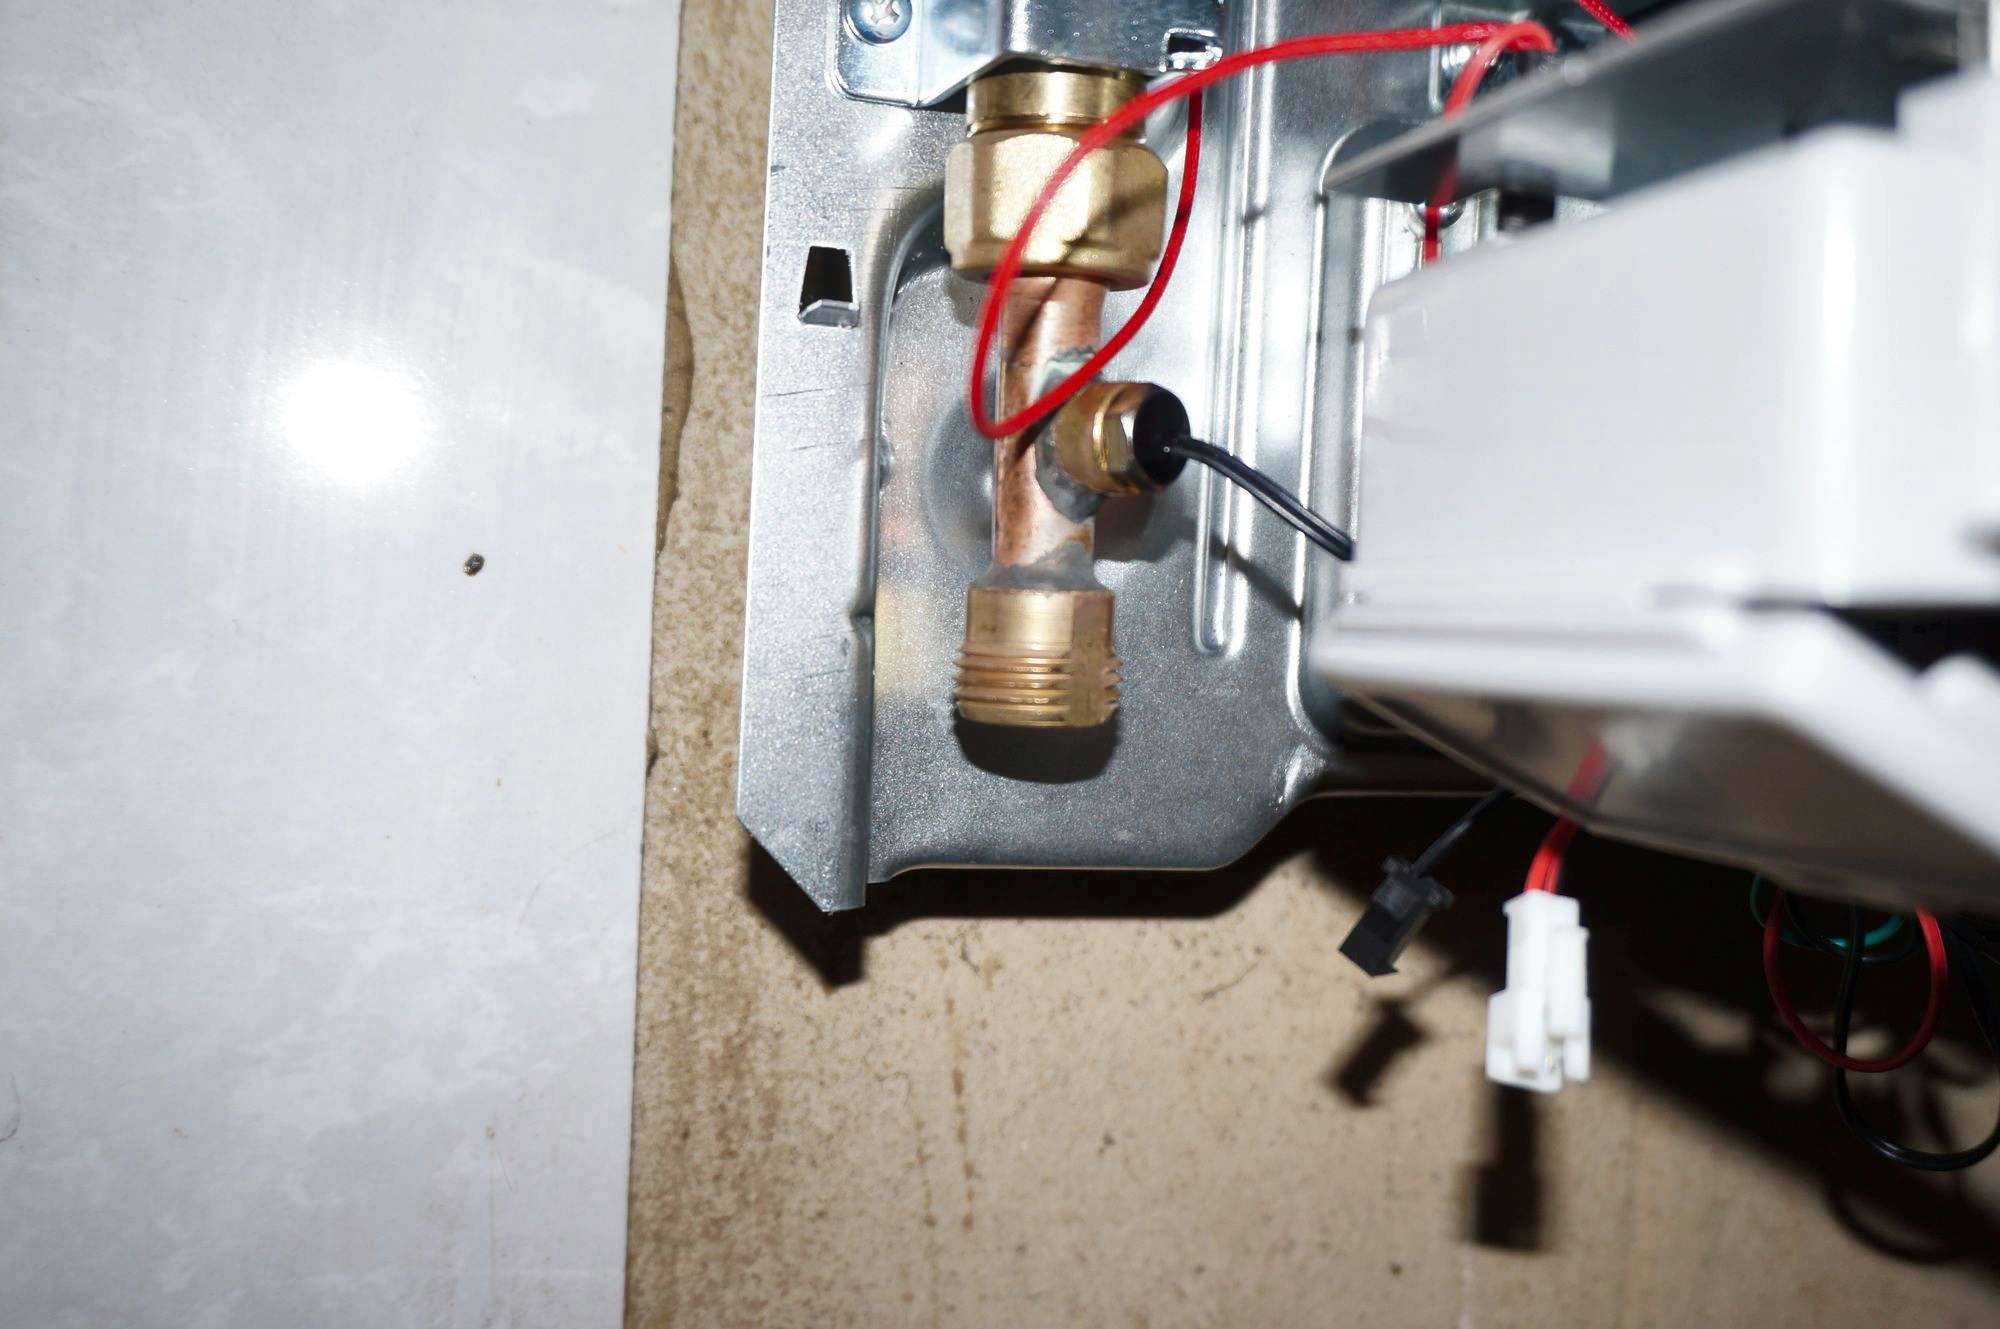 Как правильно почистить теплообменник газовой колонки в домашних условиях?